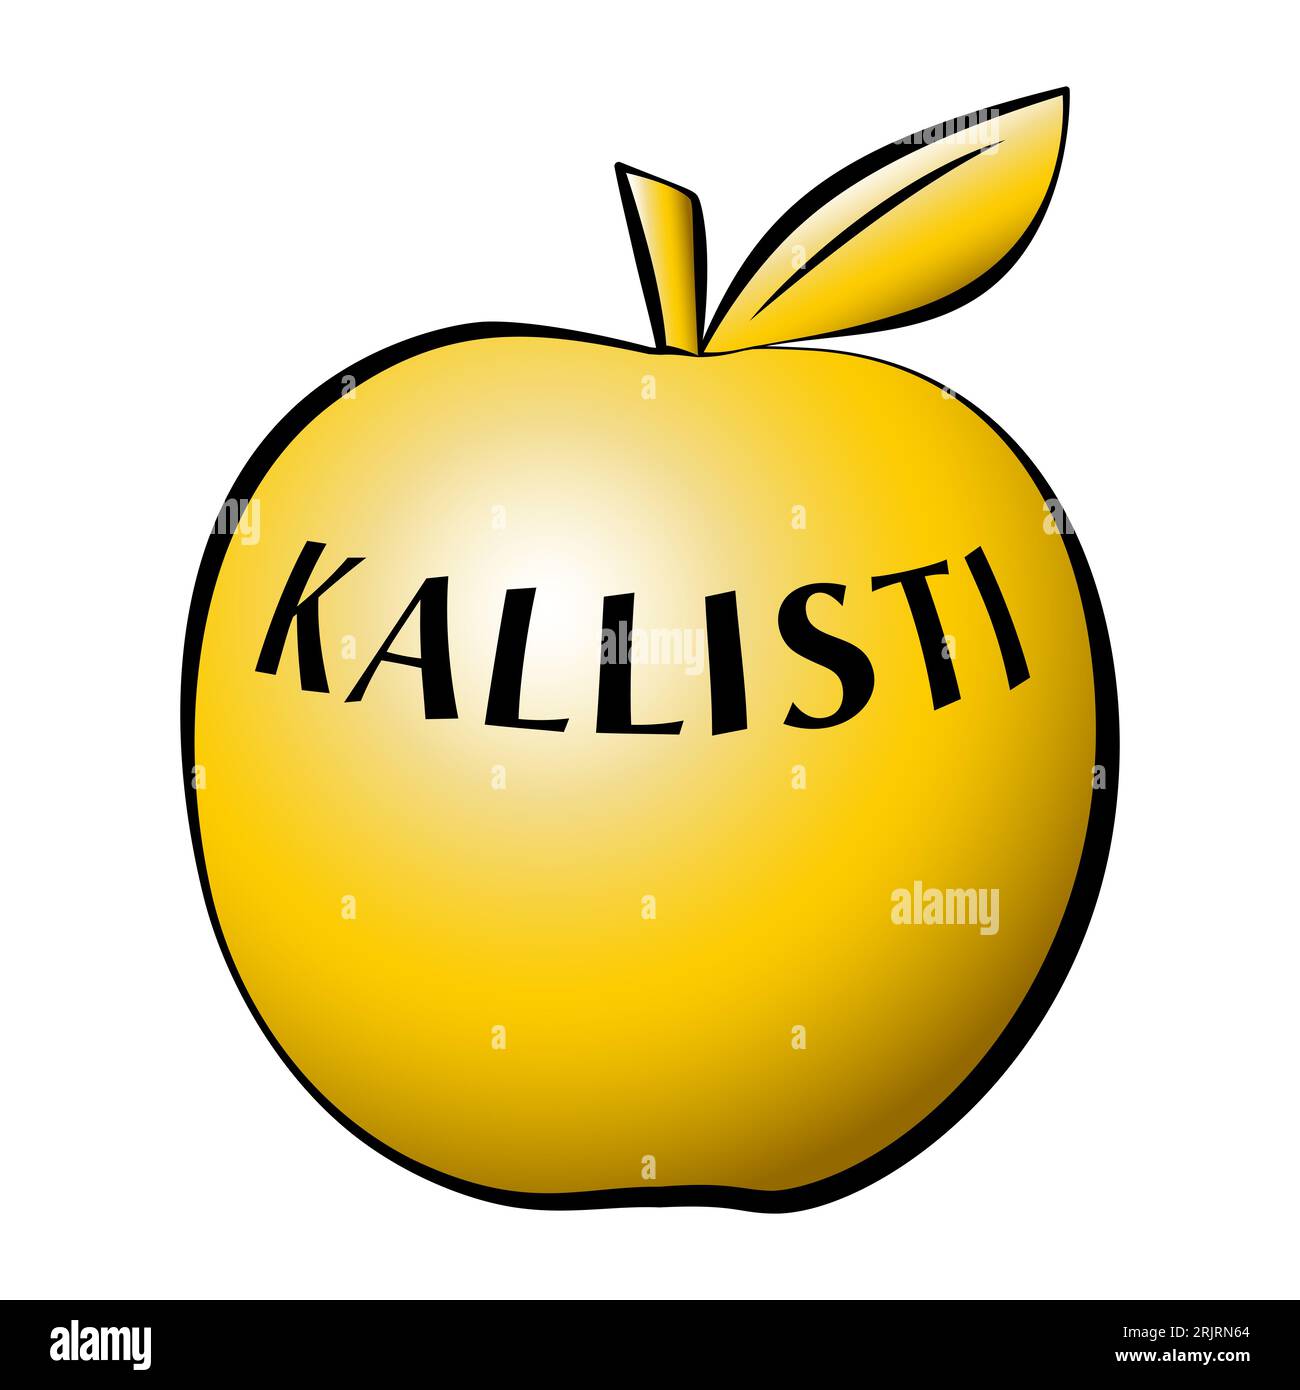 Pomme dorée de la discorde, inscrite avec KALLISTI (à la plus belle), lâchée par Eris, déesse grecque de la lutte, déclenchant une dispute alimentée par la vanité. Banque D'Images